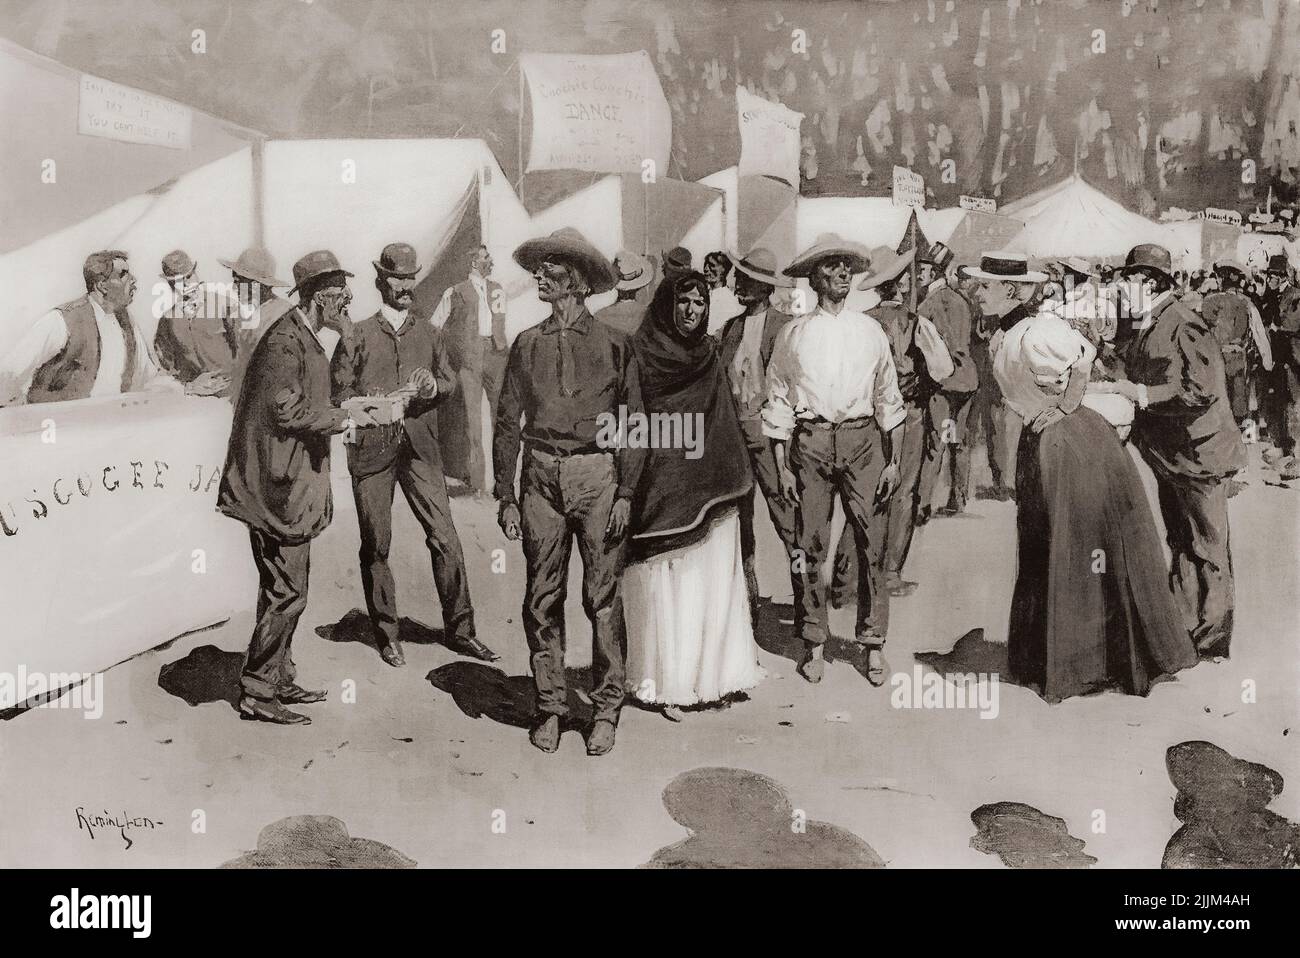 Bezahlen der Indianer für den Cherokee Strip. Szenen rund um das Regierungsviertel des Paymaster. Nach einem Werk des amerikanischen Künstlers Frederic Sackrider Remington, 1861 – 1909. Der Strip ist auch als Cherokee Outlet bekannt. Stockfoto